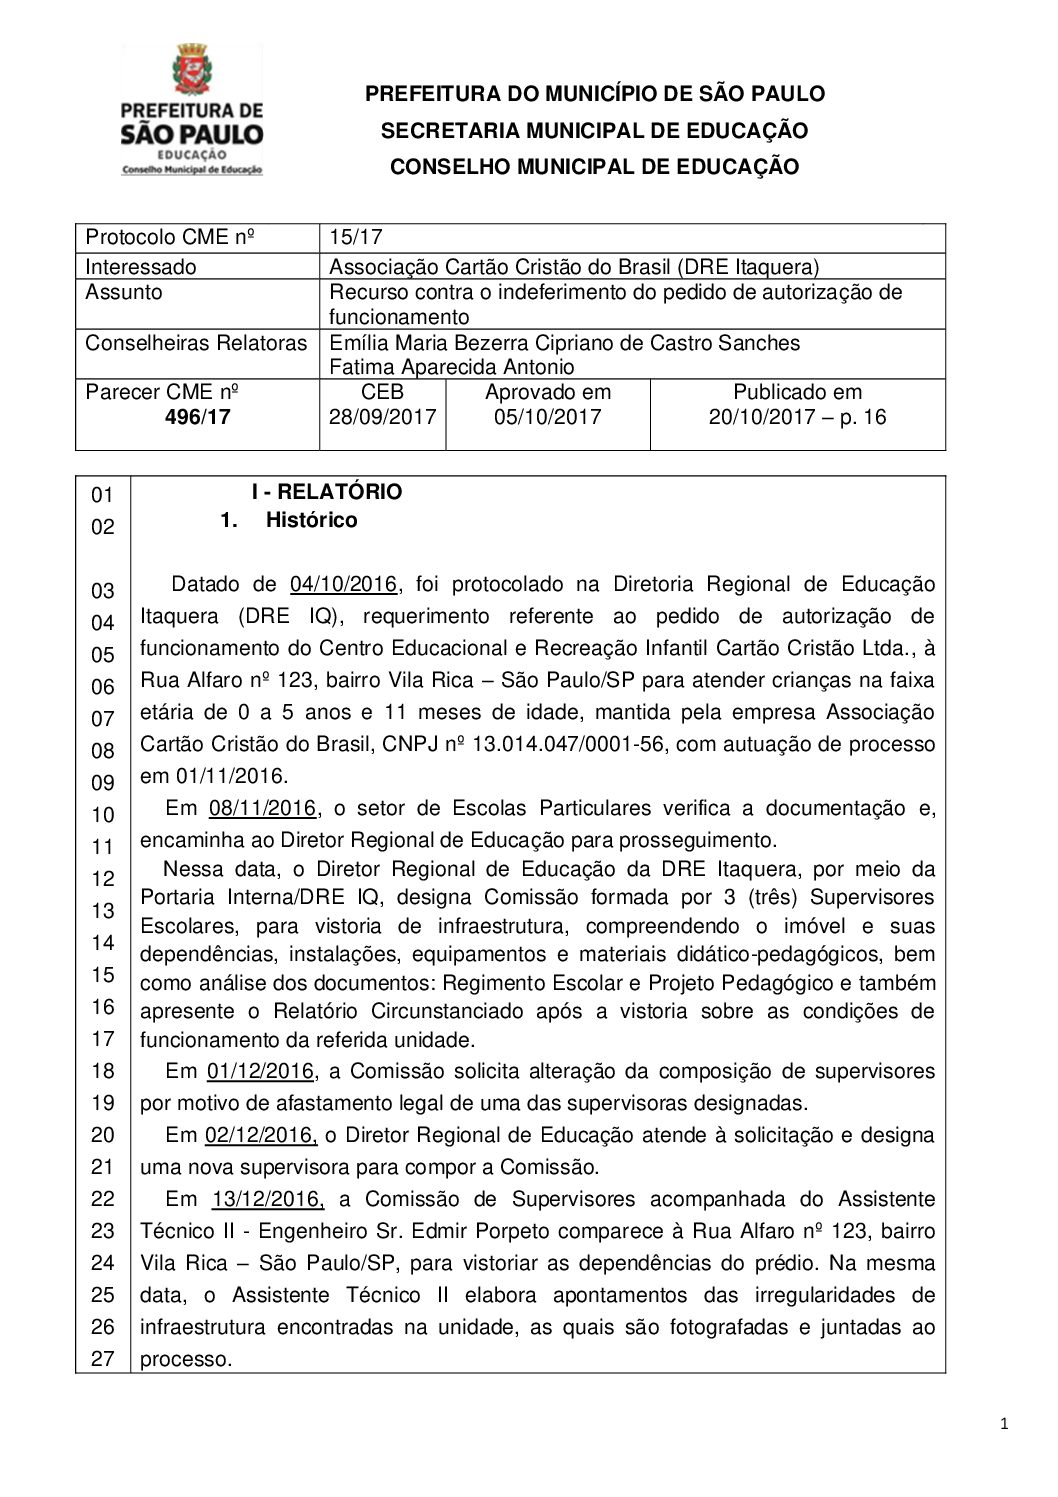 Parecer CME nº 496/2017 - Associação Cartão Cristão do Brasil (DRE Itaquera) - Recurso contra o indeferimento do pedido de autorização de funcionamento 